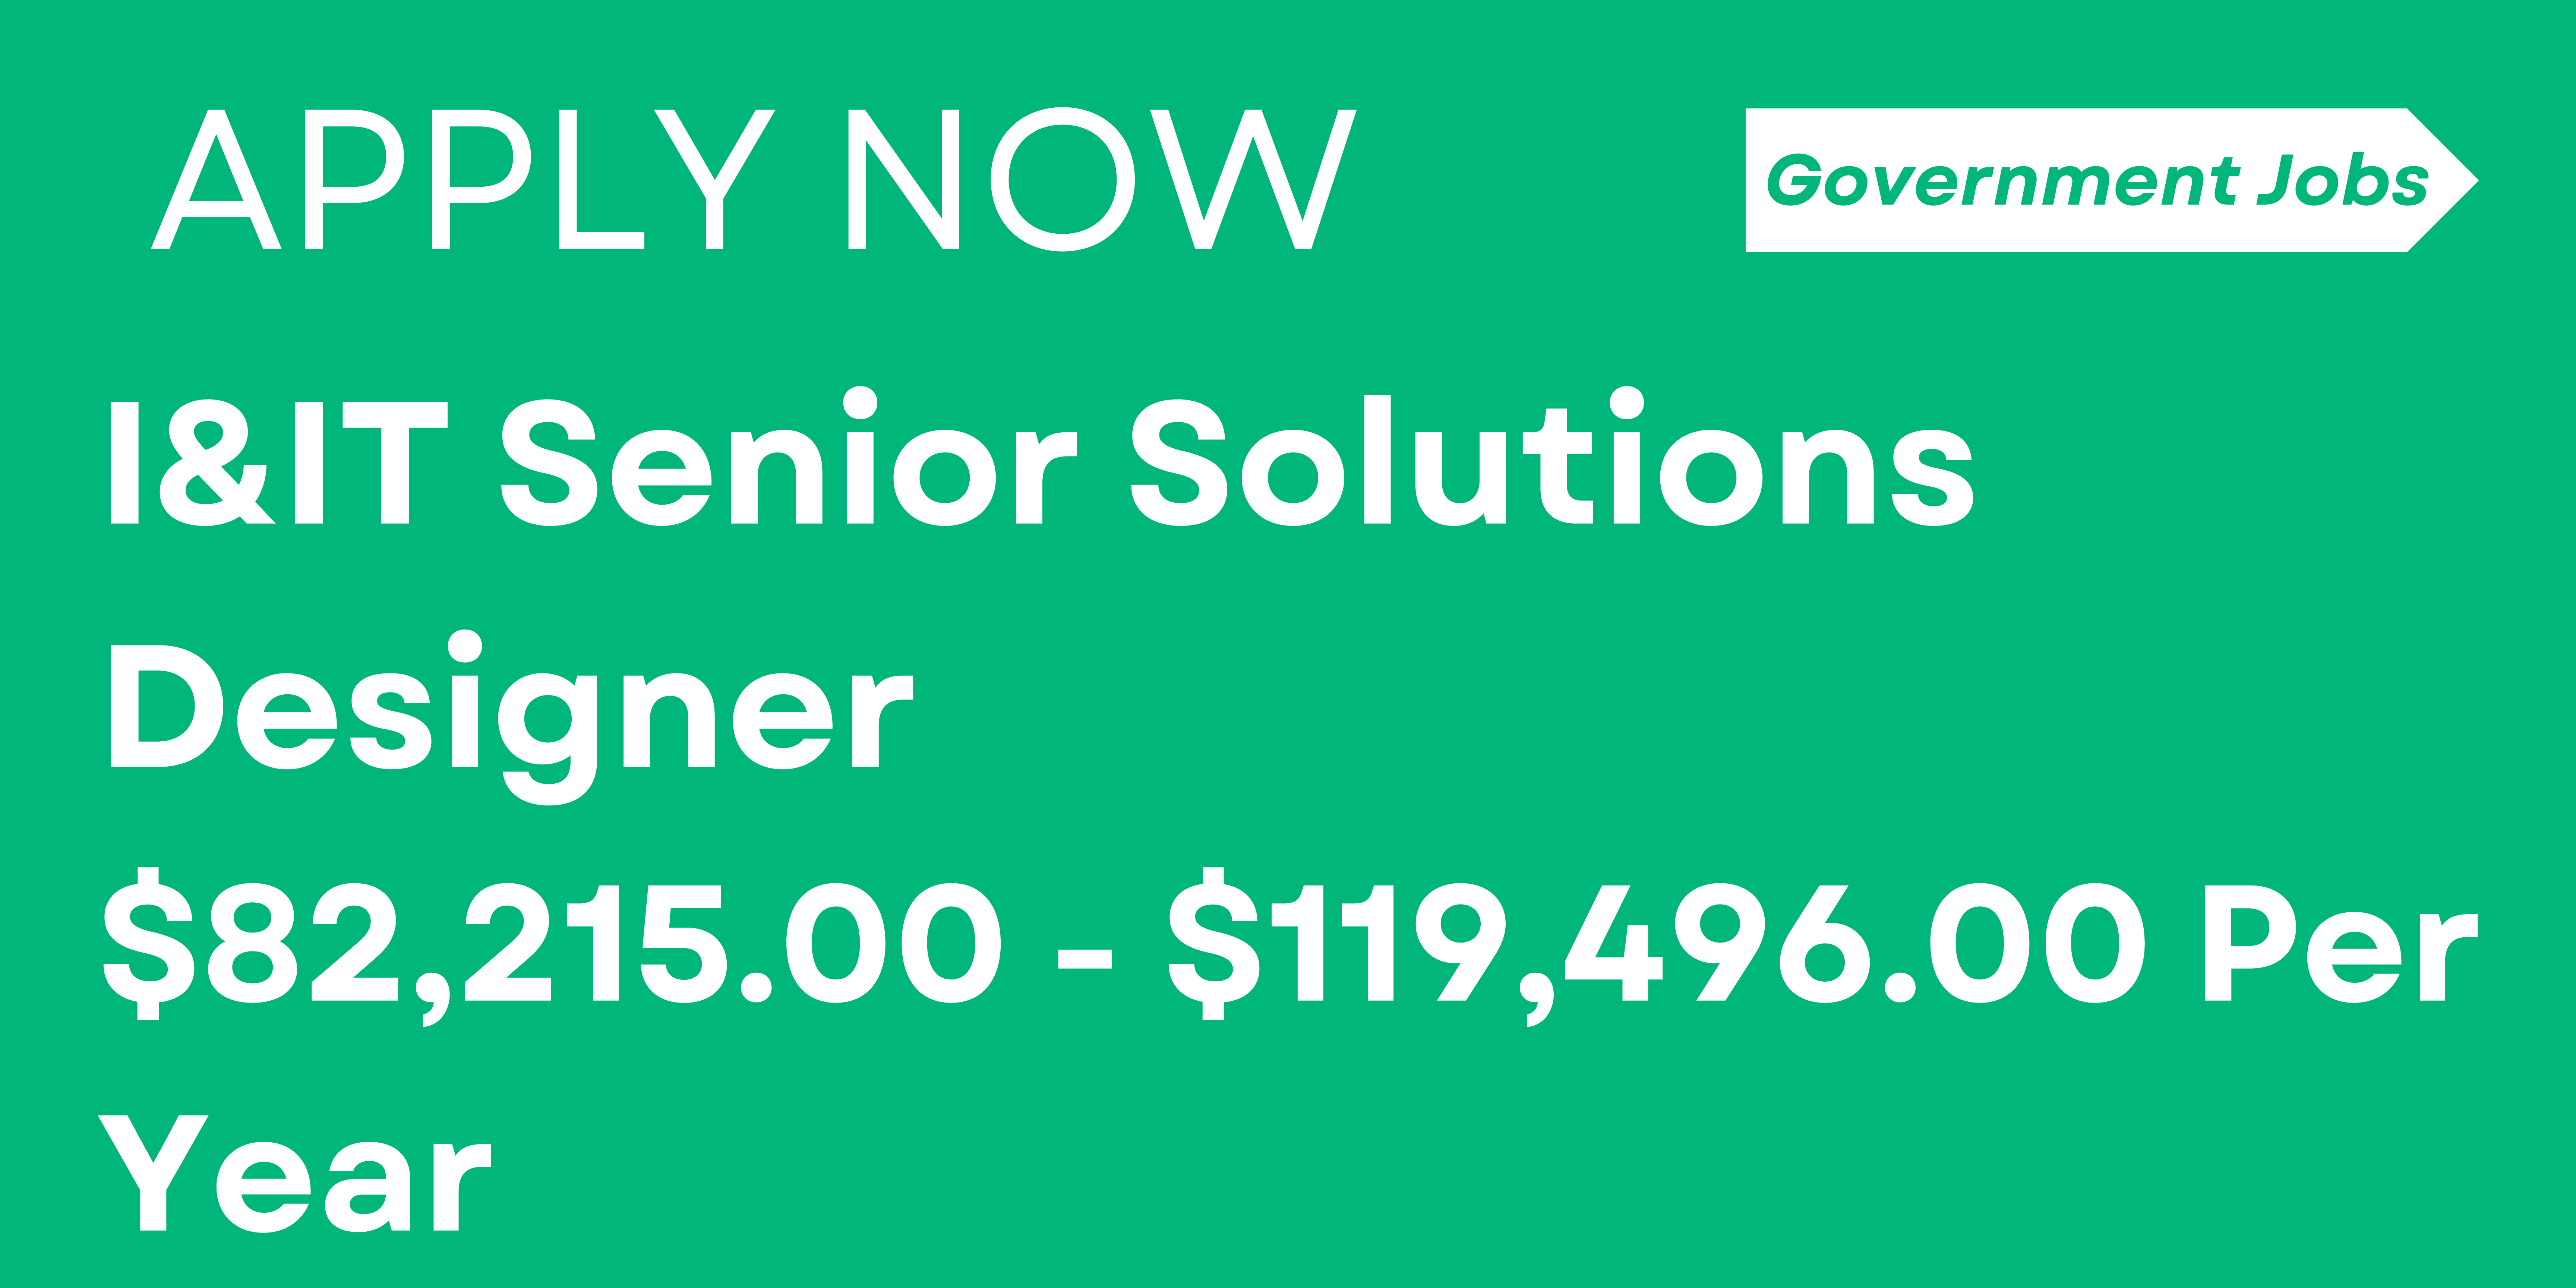 I&IT Senior Solutions Designer